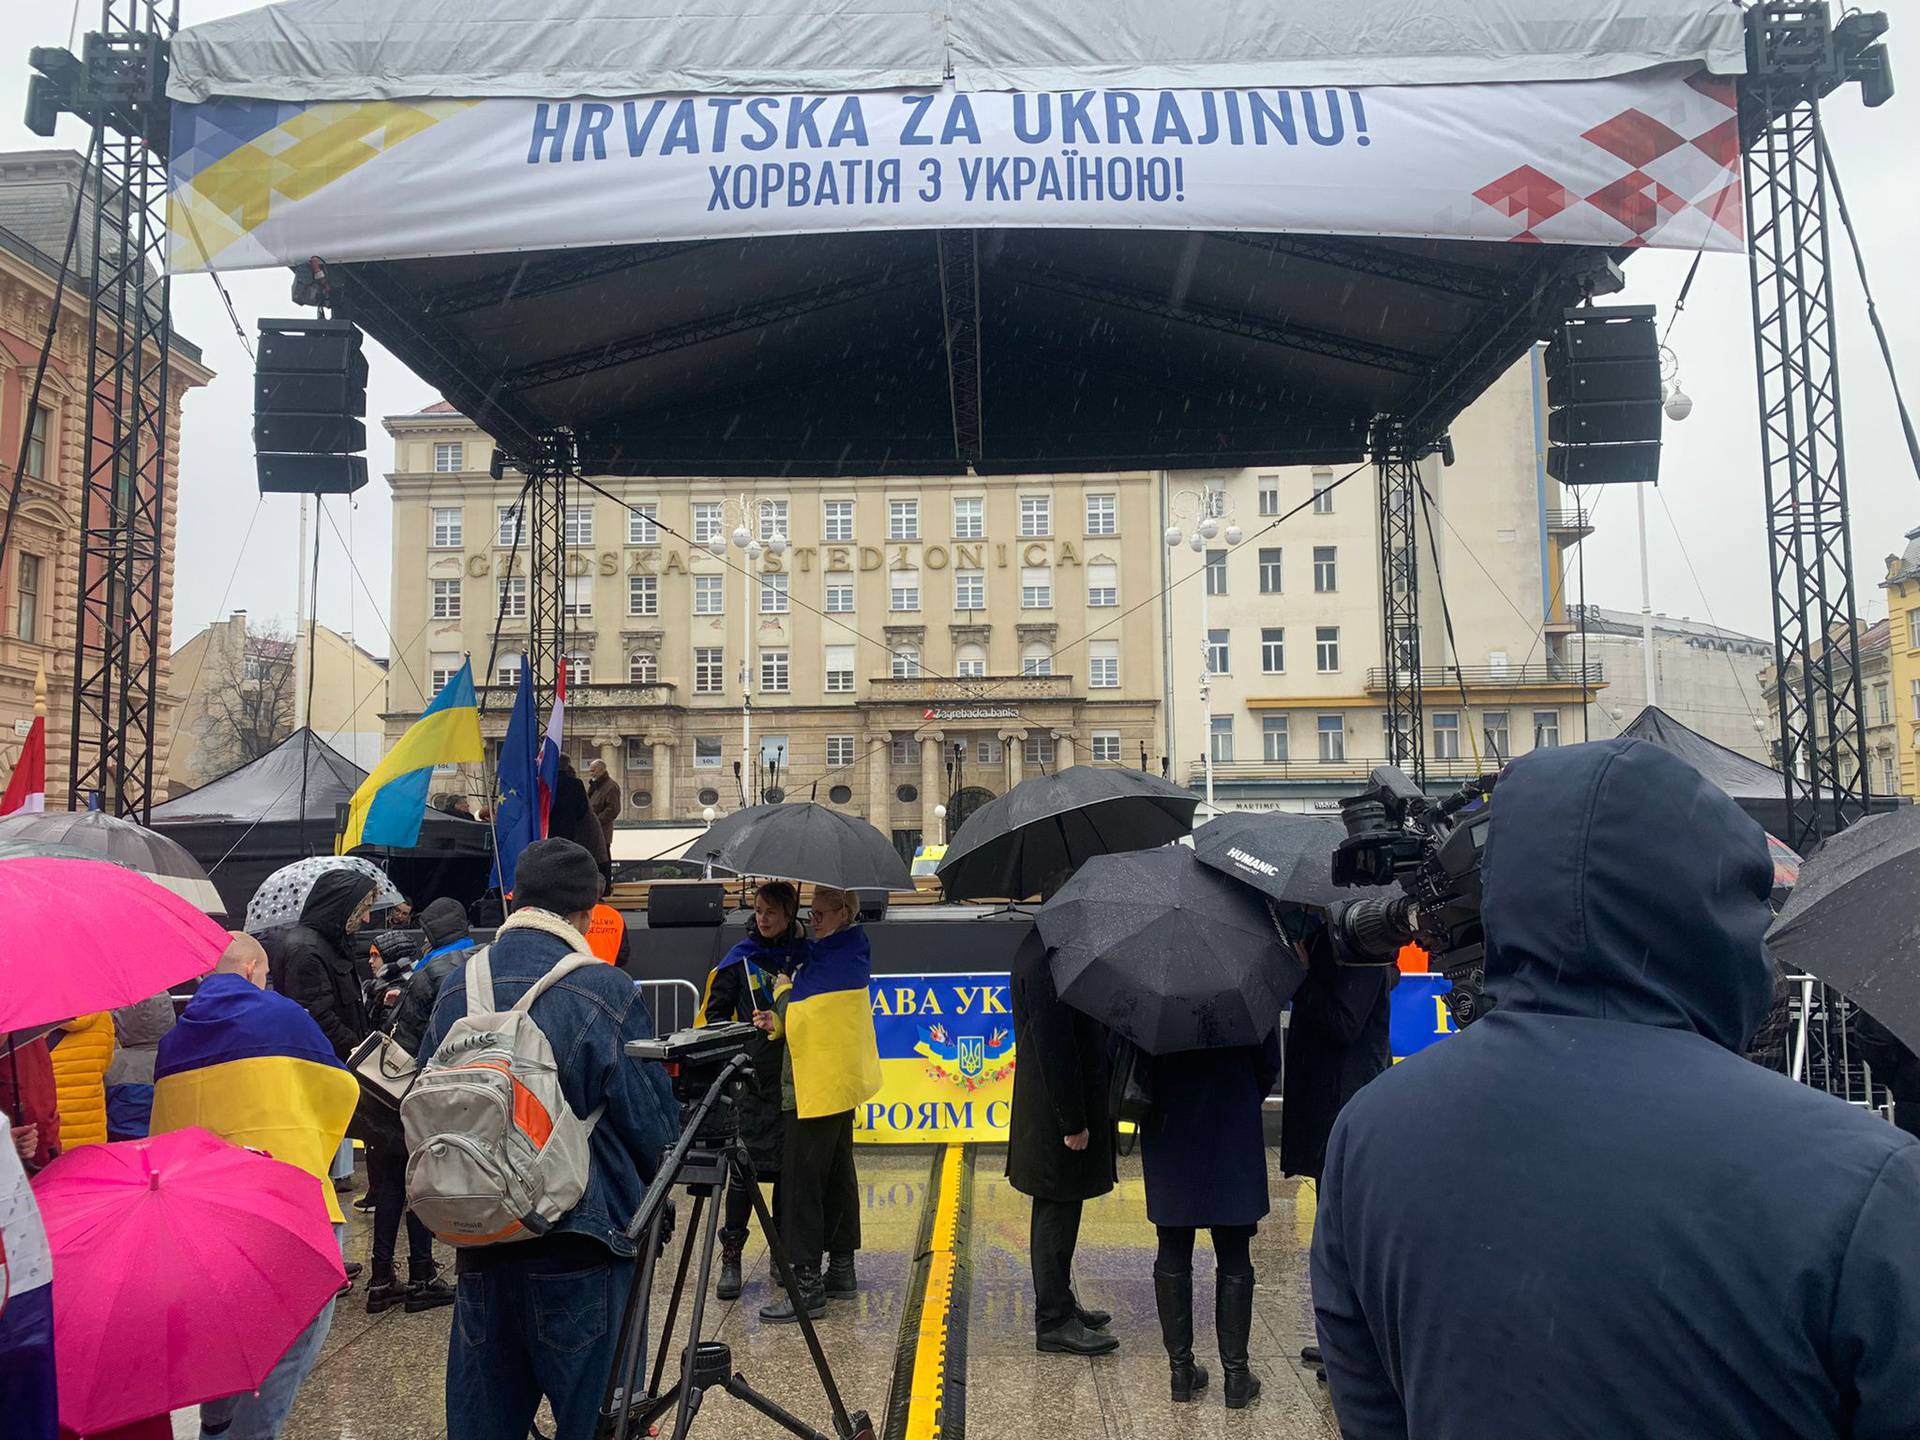 VIDEO Na Trgu bana Jelačića održan skup potpore Ukrajini